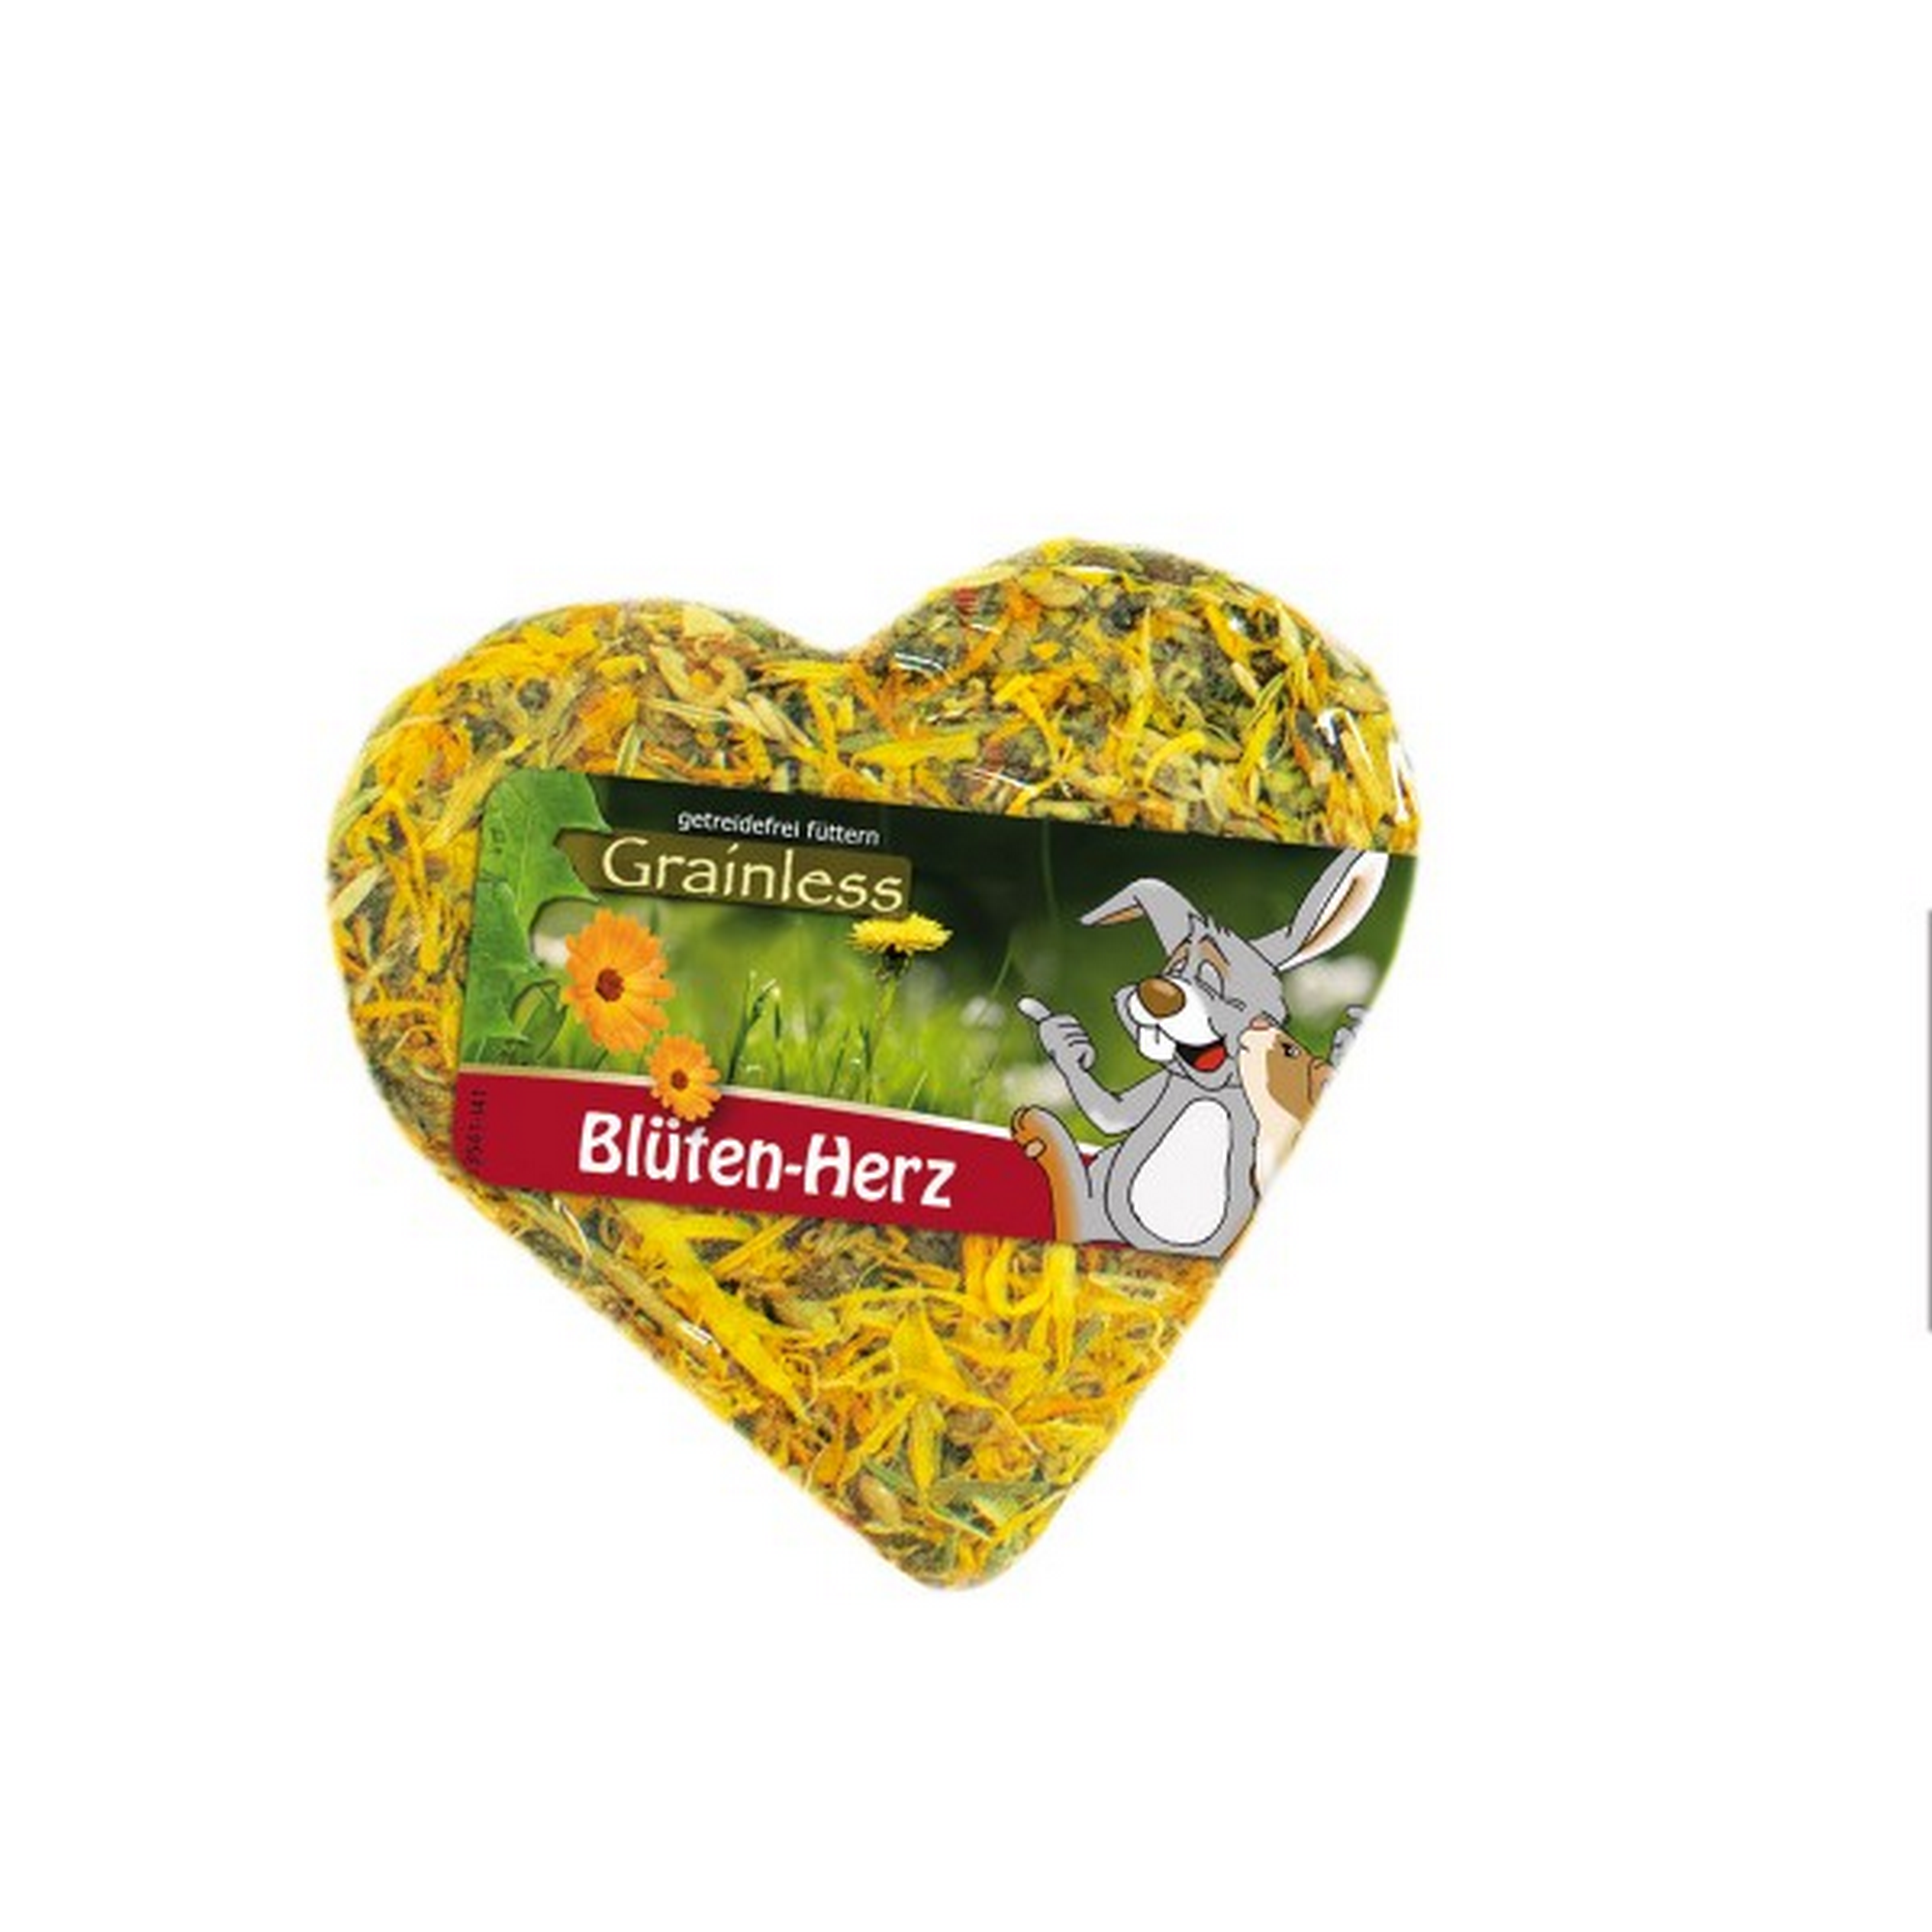 Nager-Ergänzungsfutter 'Grainless Blüten-Herz' 90 g + product picture